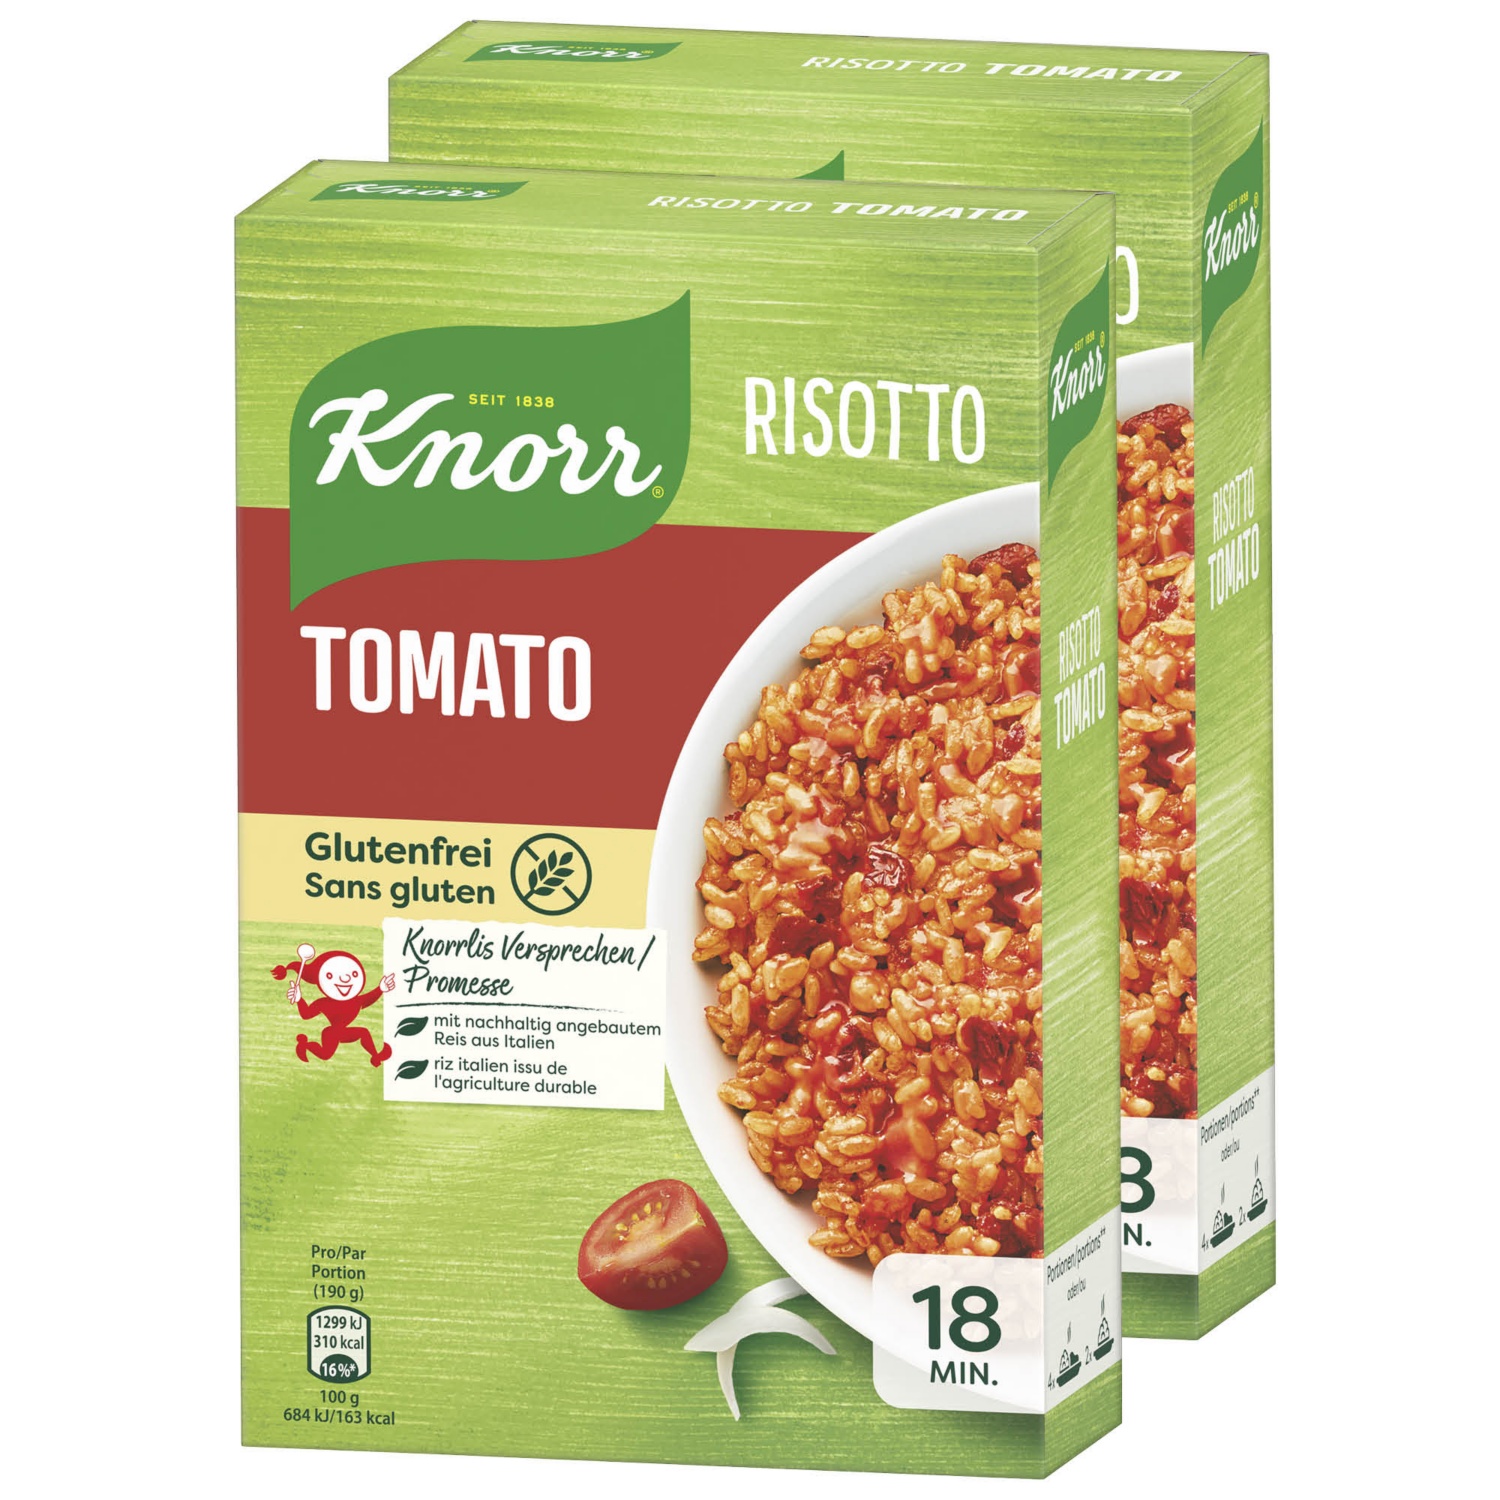 KNORR® Risotto, Tomato